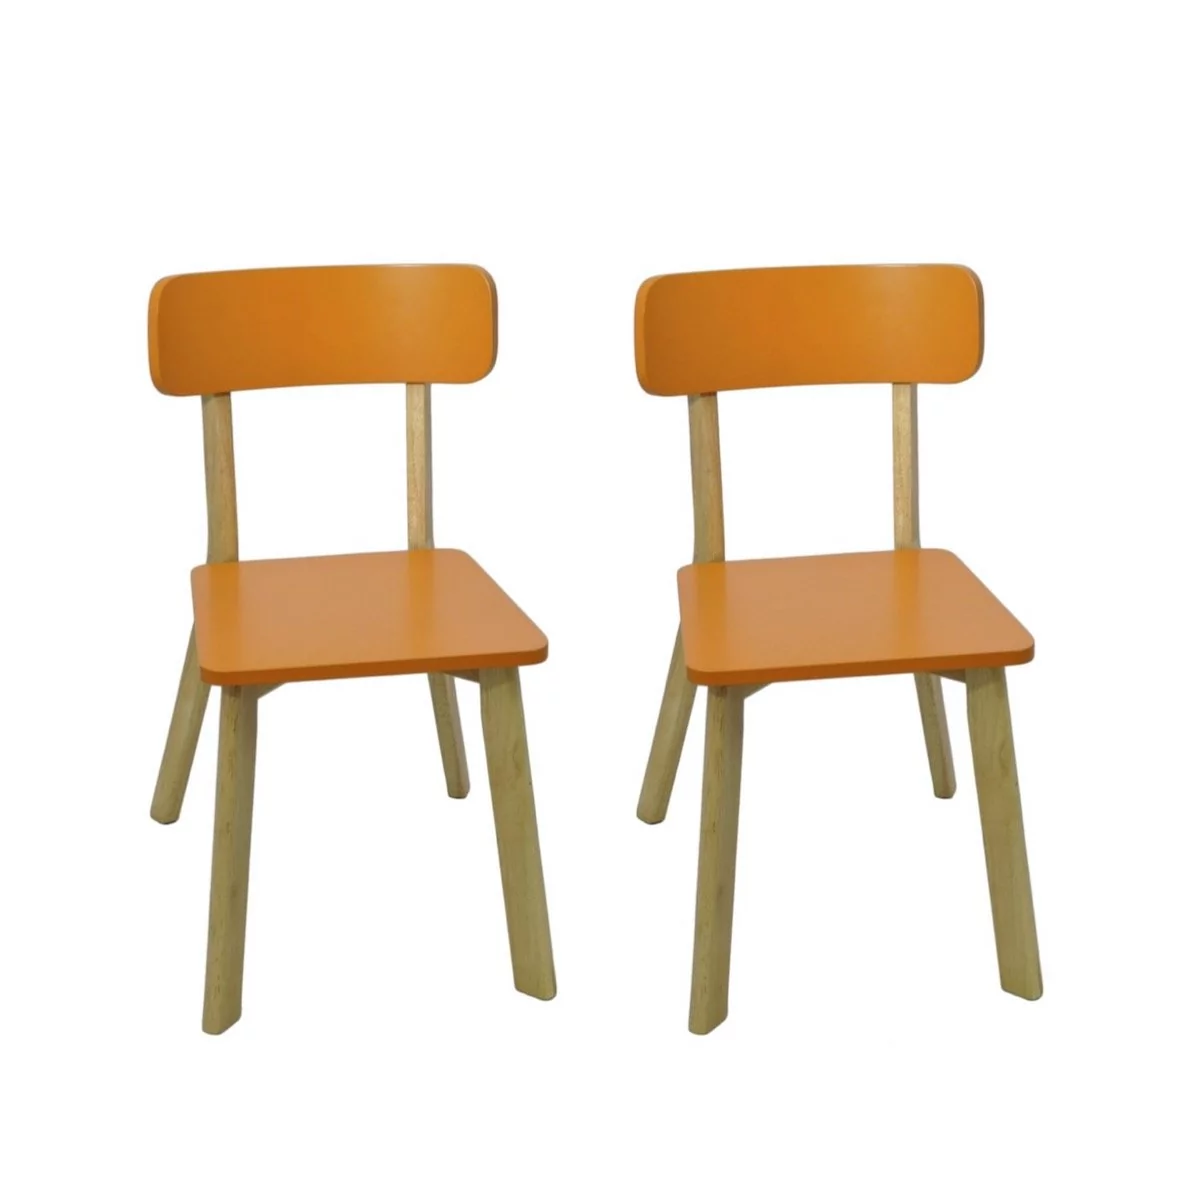 2x Krzesło kuchenne drewniane pomarańczowe